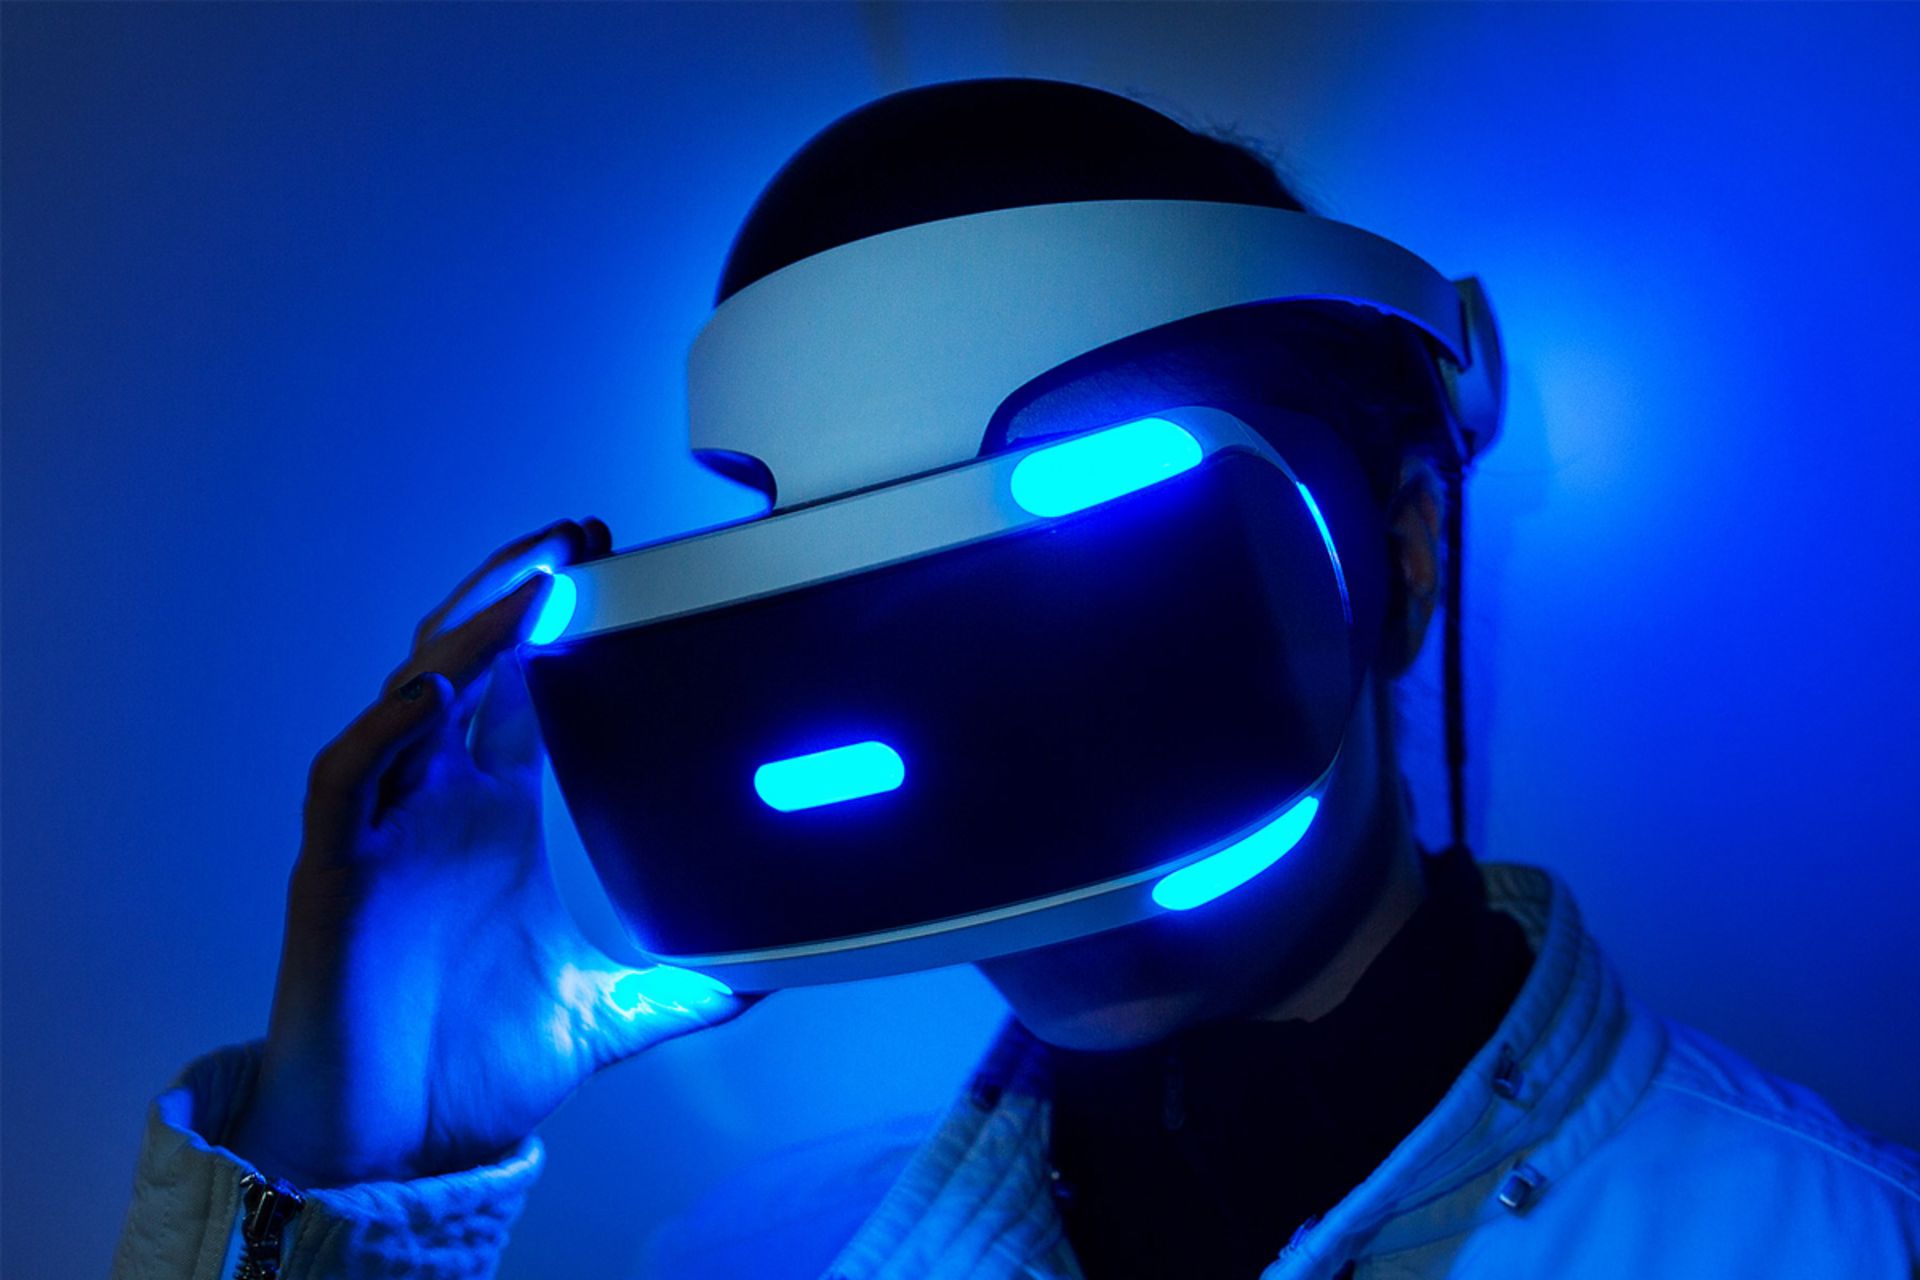 مرجع متخصصين ايران پلي استيشن وي آر سوني / Sony PlayStation VR روي سر يك فرد